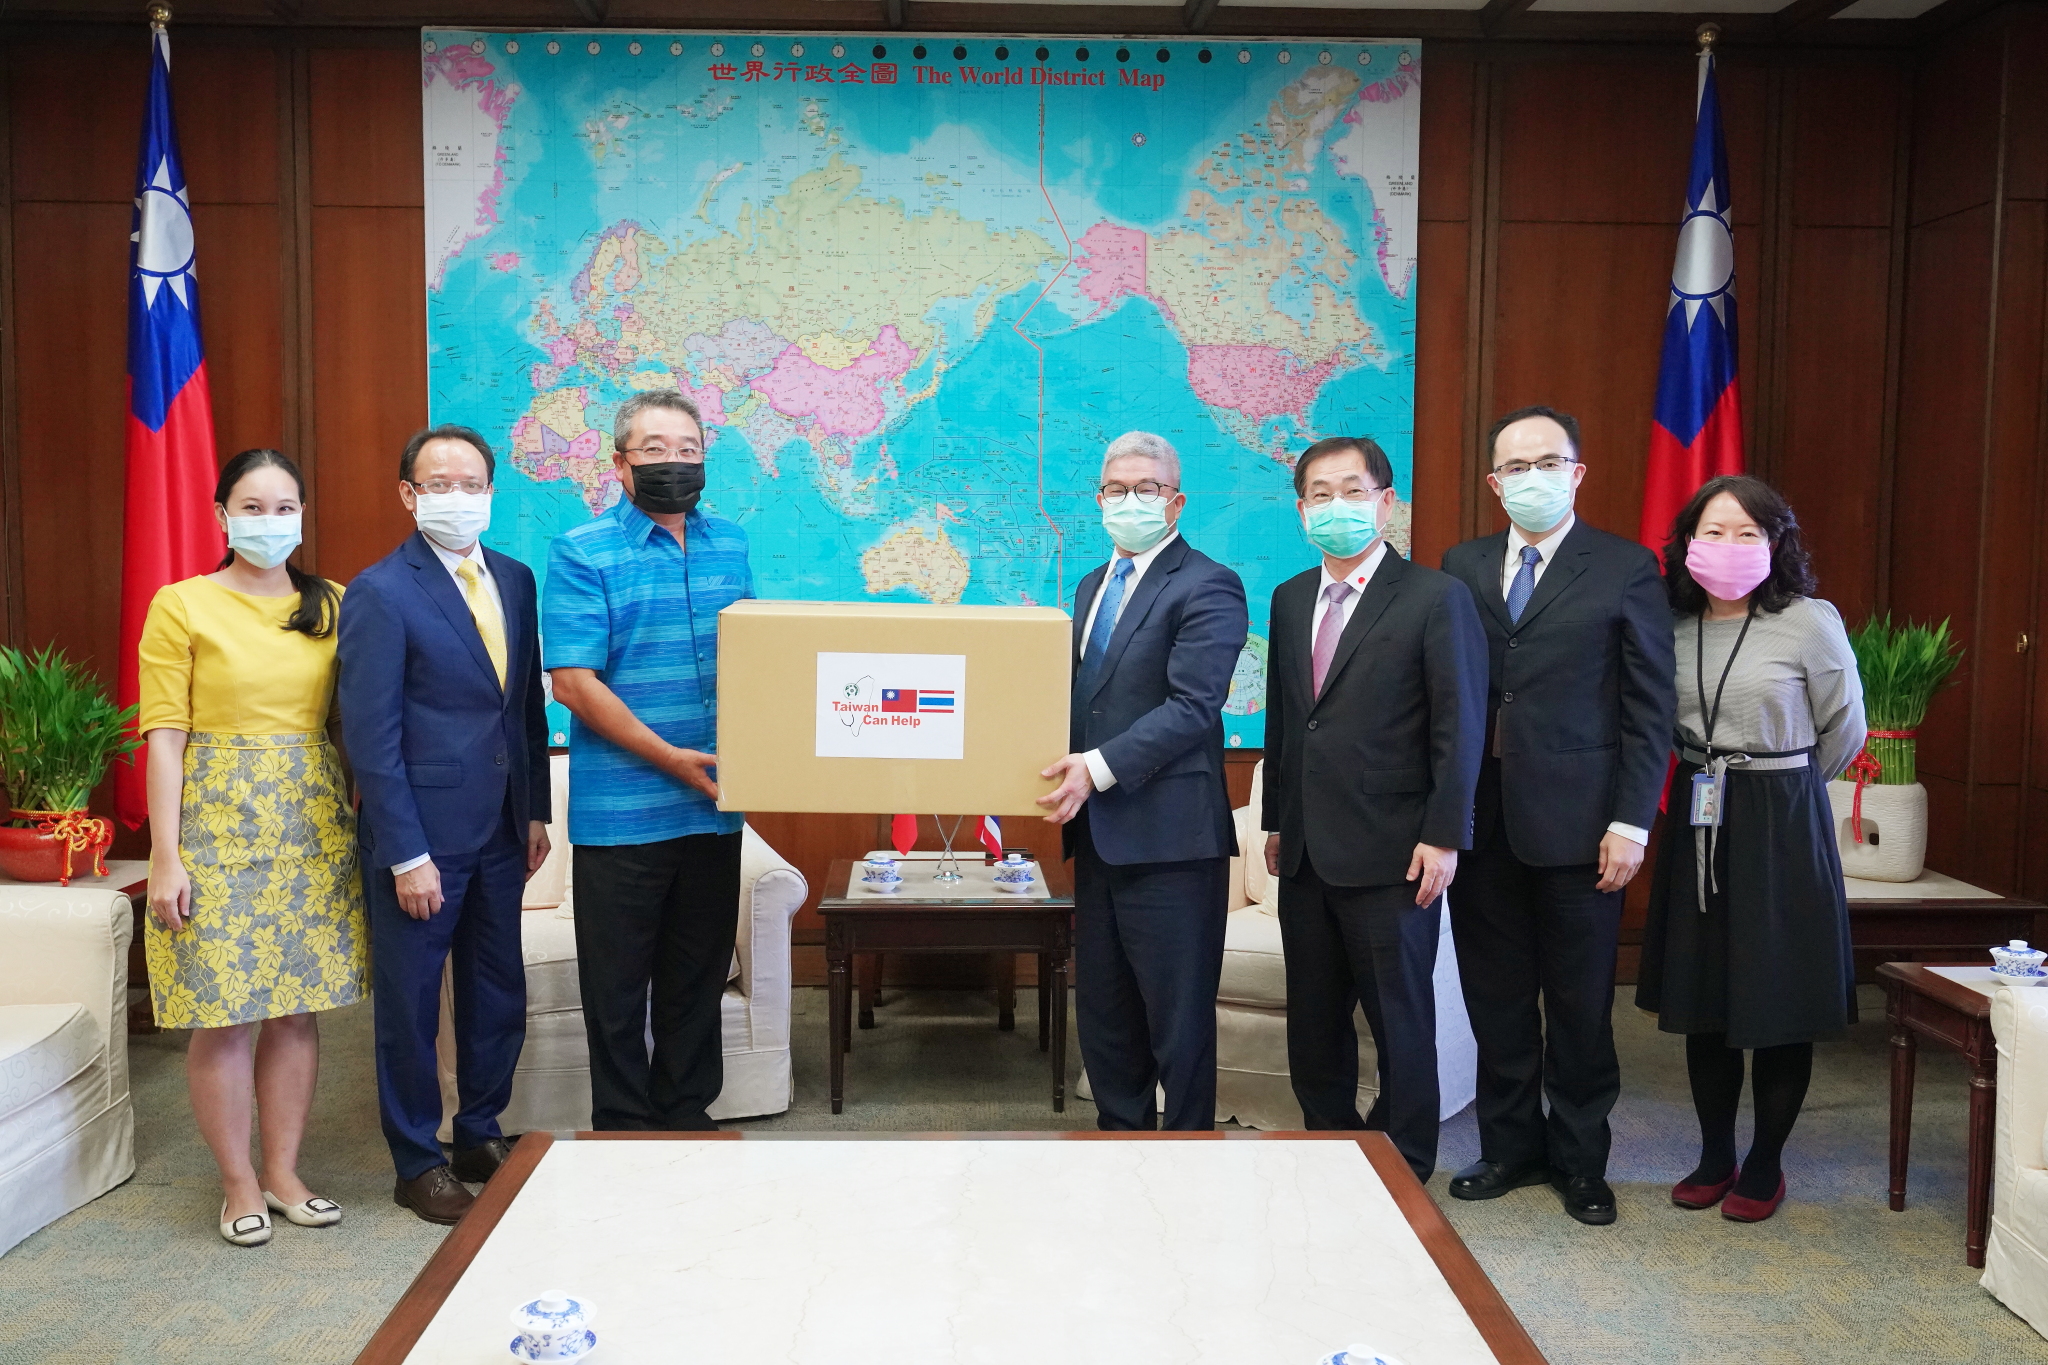 Thứ trưởng Bộ Ngoại giao ông Từ Tư Kiệm (thứ 4 từ bên phải) đại diện Chính phủ Đài Loan quyên tặng khẩu trang đến đại diện Văn phòng kinh tế mậu dịch Thái Lan ông Thongchai Chasawath (thứ 3 từ bên trái), ông Phubadi La-Or-ngern (thứ 2 từ bên trái) – phó giám đốc Văn phòng Thái Lan tại Đài Bắc, 